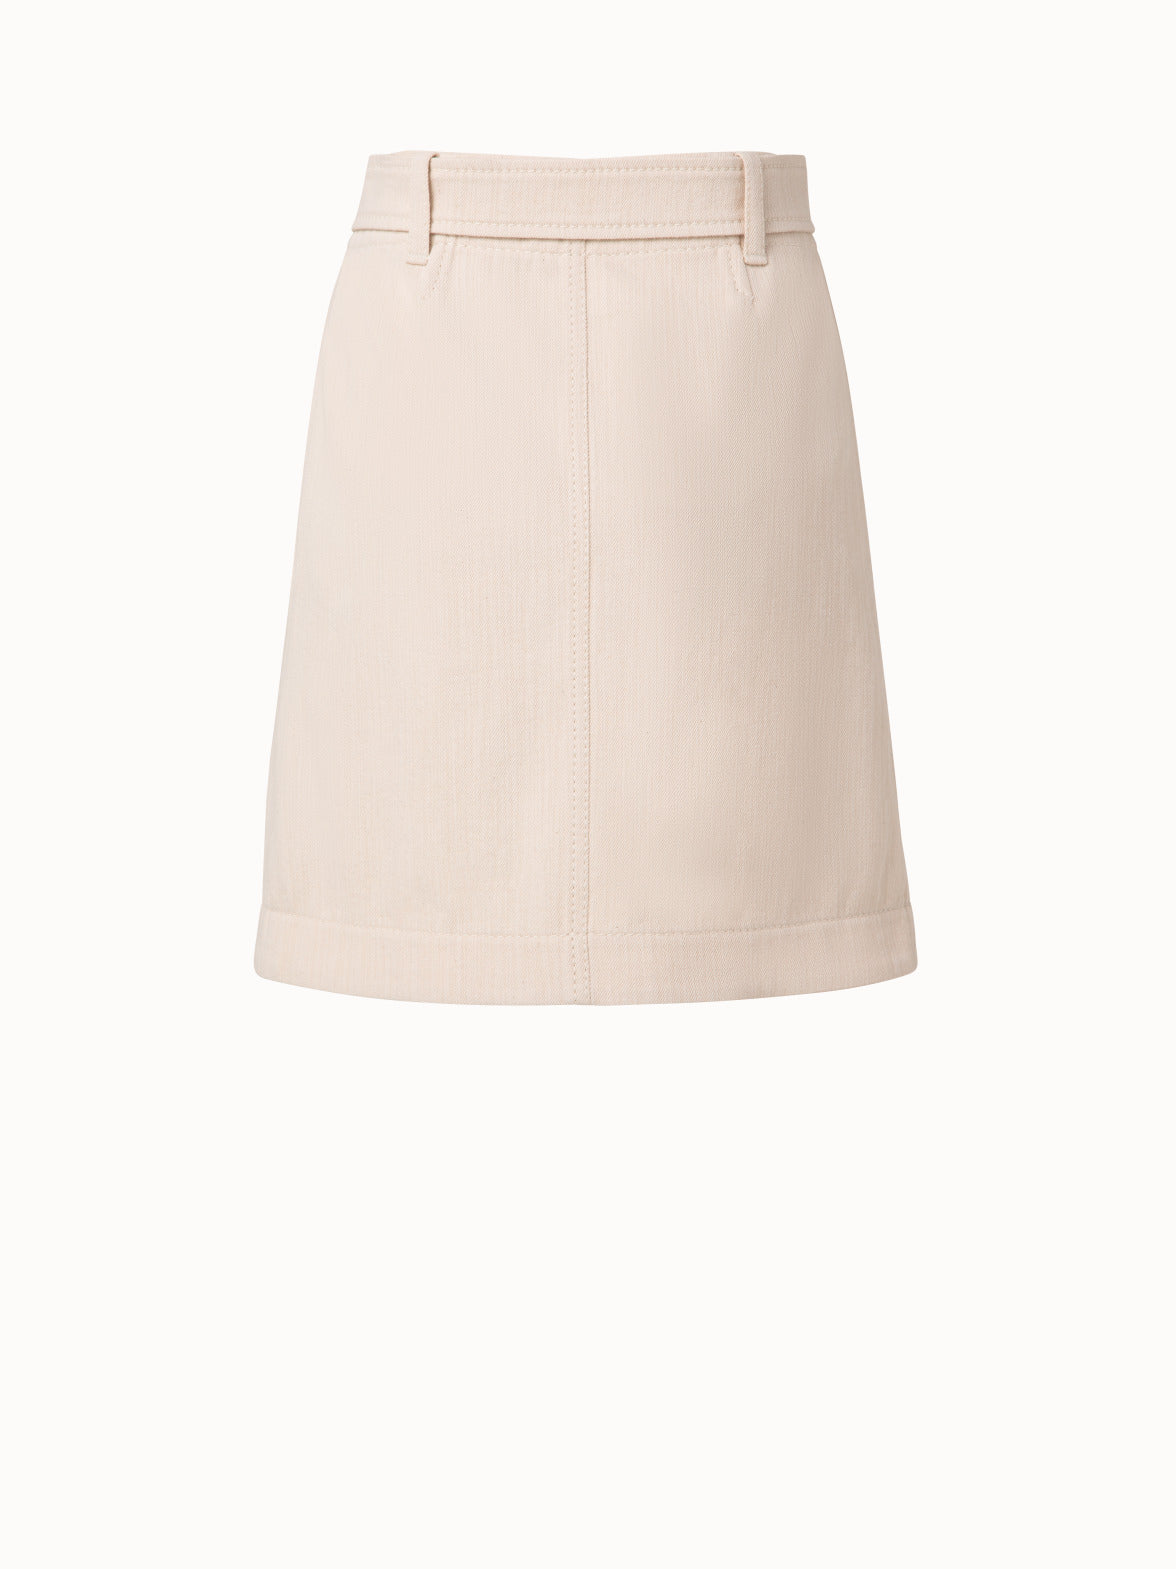 Denim A-Line Skirt - White | Talbots